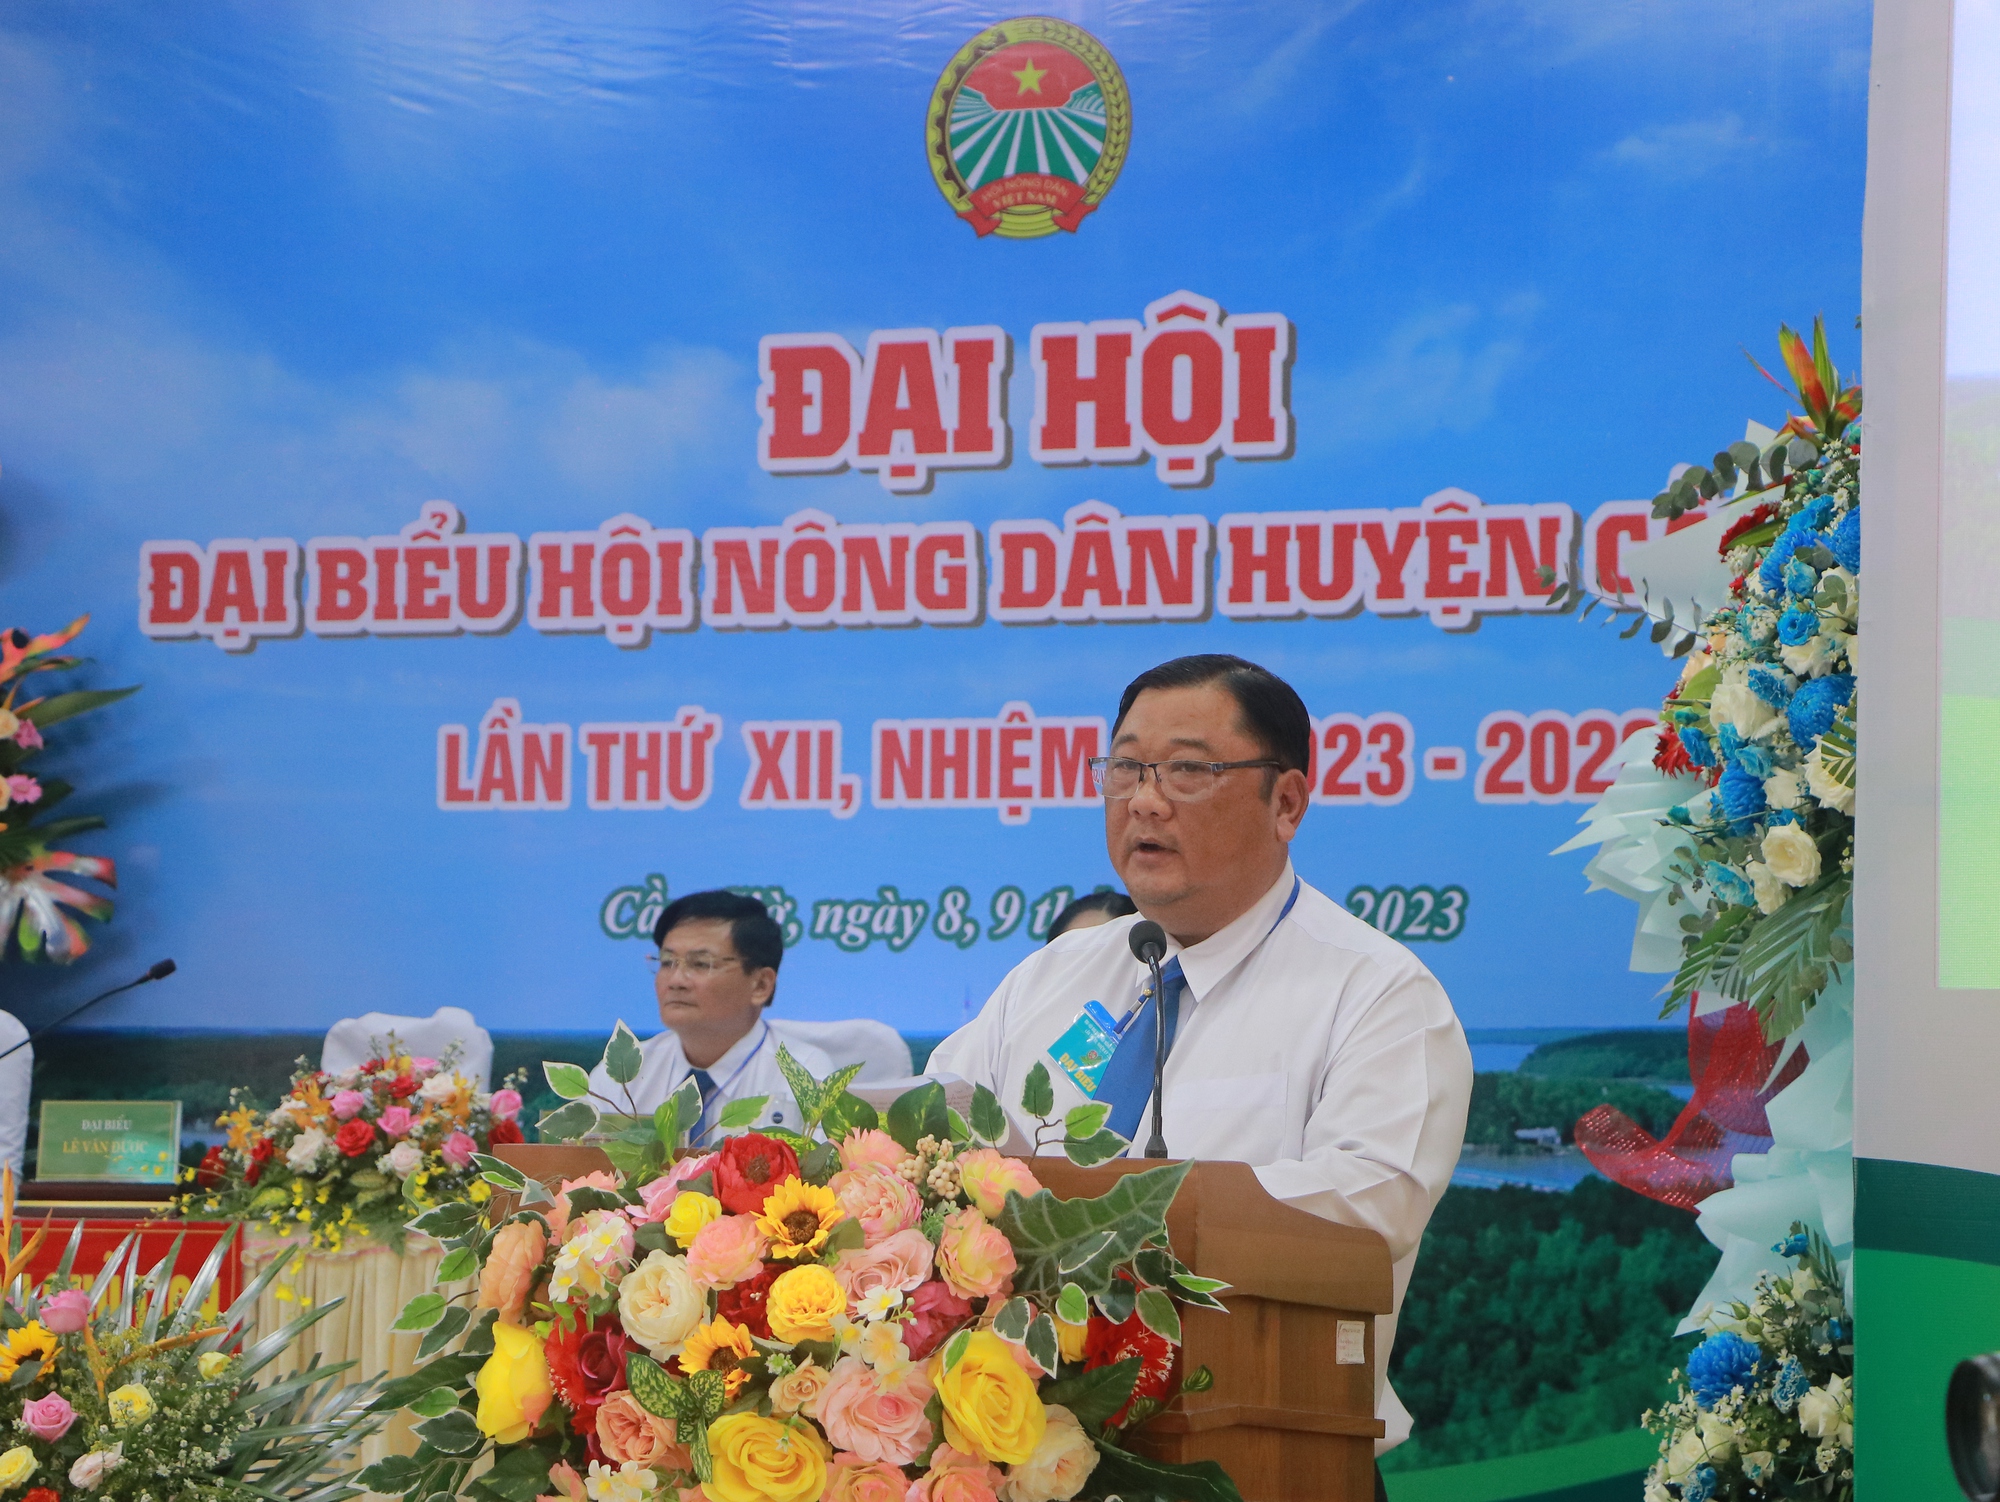 Đại hội Hội Nông dân huyện Cần Giờ, ông Lê Văn Được tái đắc cử - Ảnh 4.